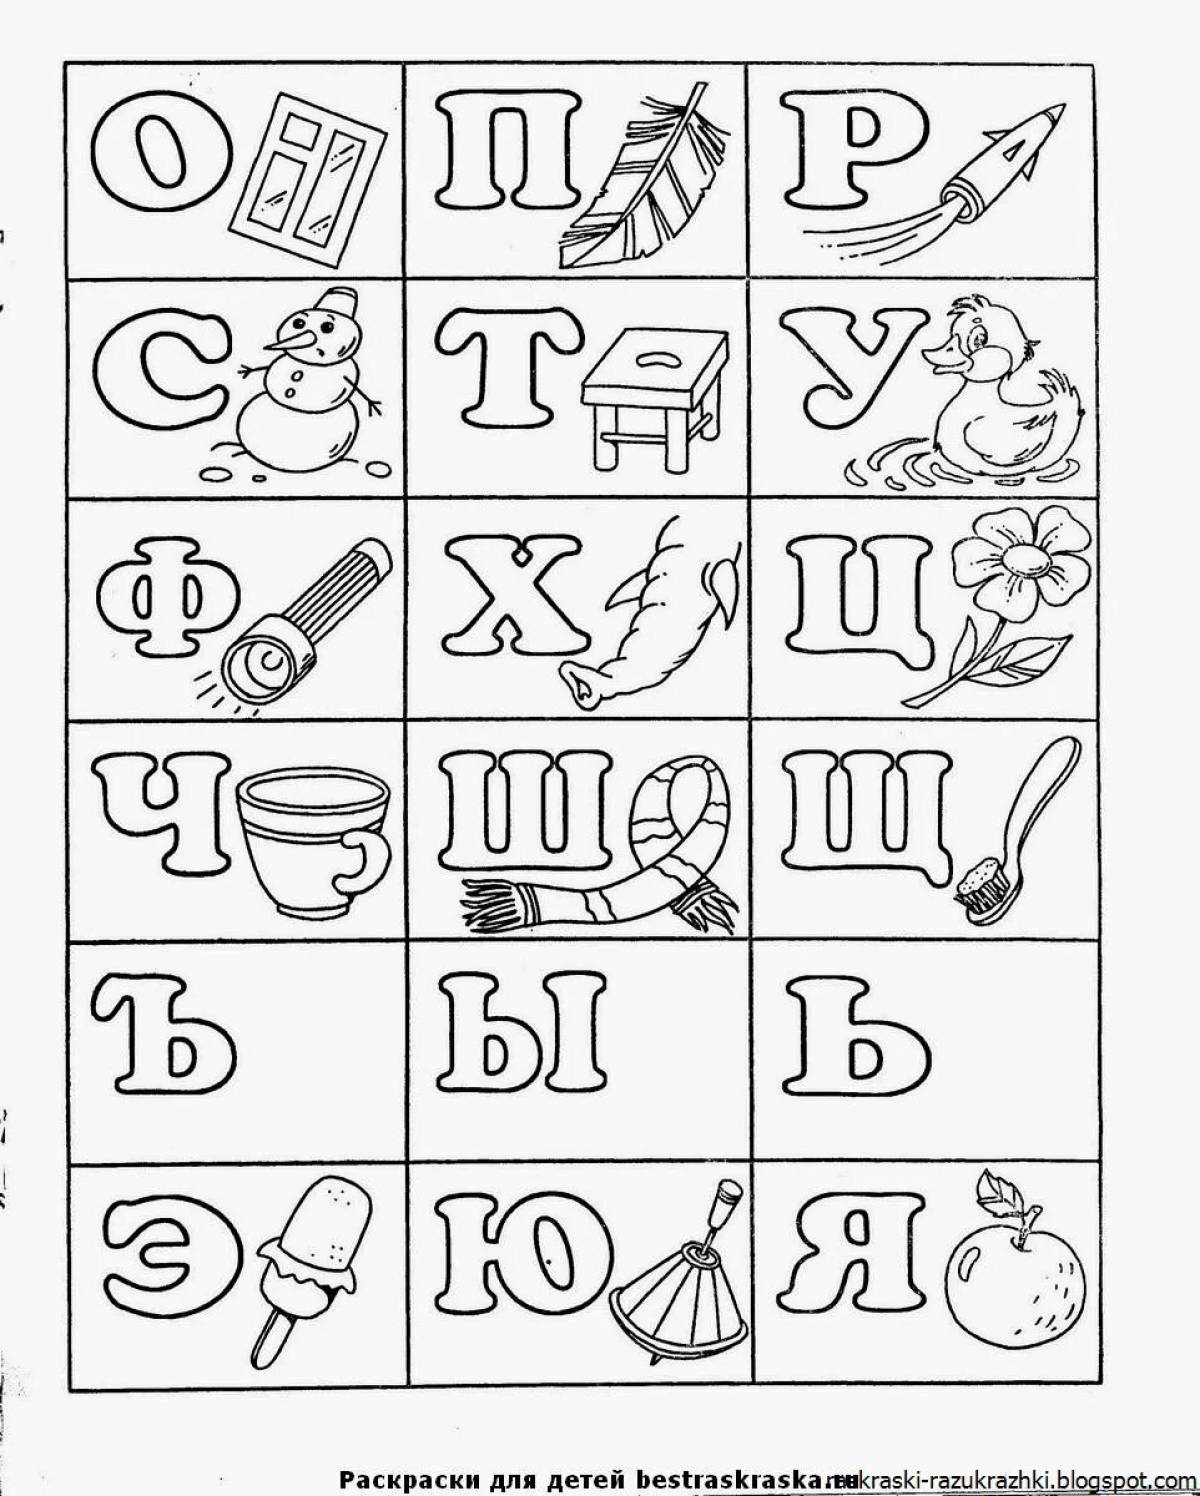 Красочная страница с алфавитом лоры для детей